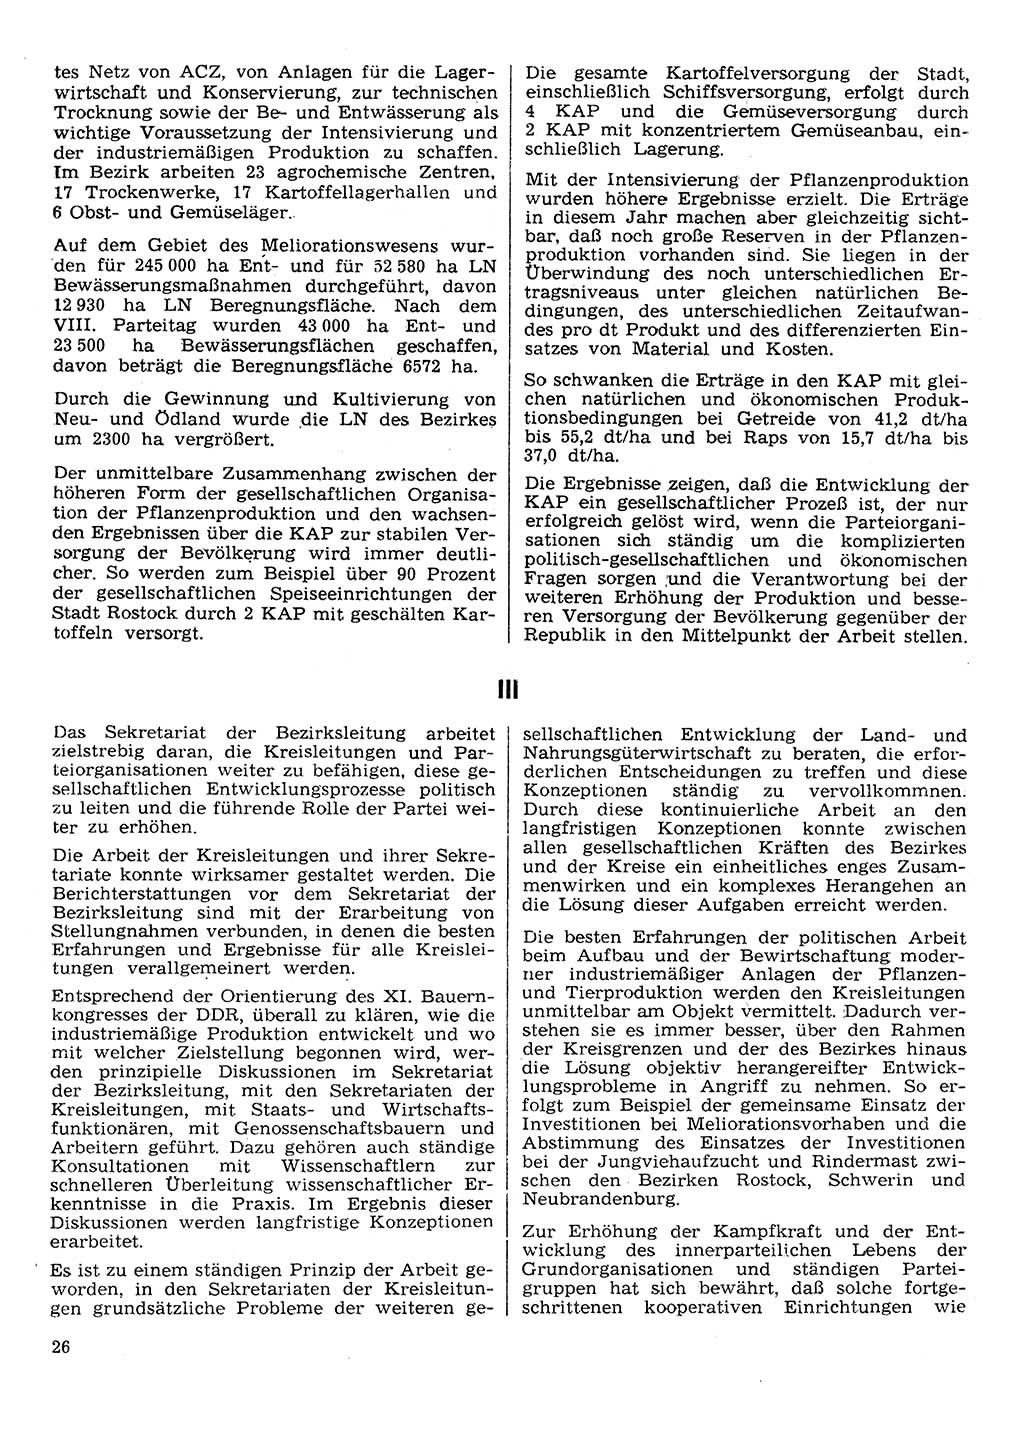 Neuer Weg (NW), Organ des Zentralkomitees (ZK) der SED (Sozialistische Einheitspartei Deutschlands) für Fragen des Parteilebens, 30. Jahrgang [Deutsche Demokratische Republik (DDR)] 1975, Seite 26 (NW ZK SED DDR 1975, S. 26)